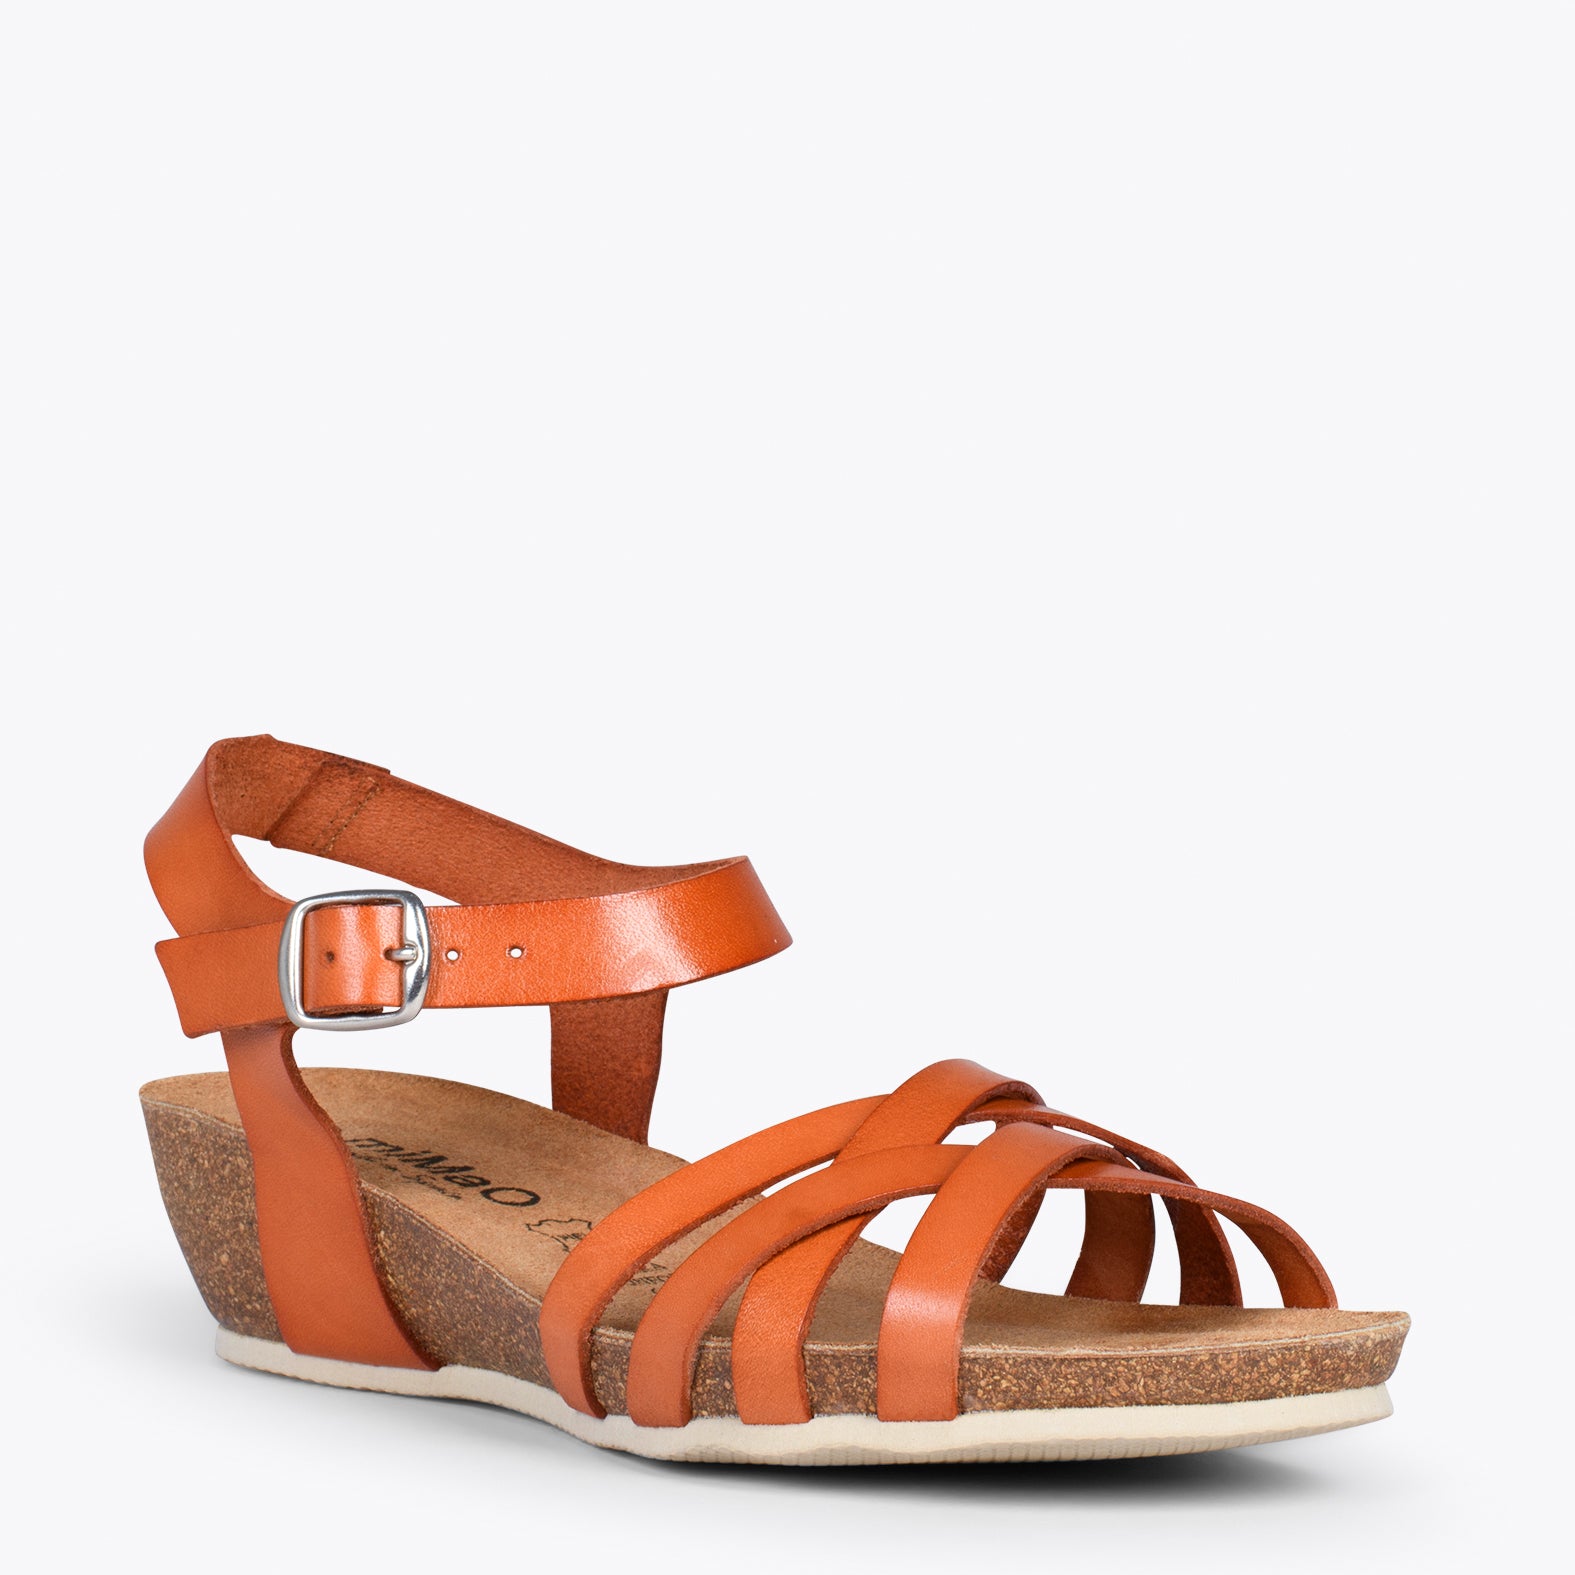 HANAE – ORANGE BIO flat sandals with straps